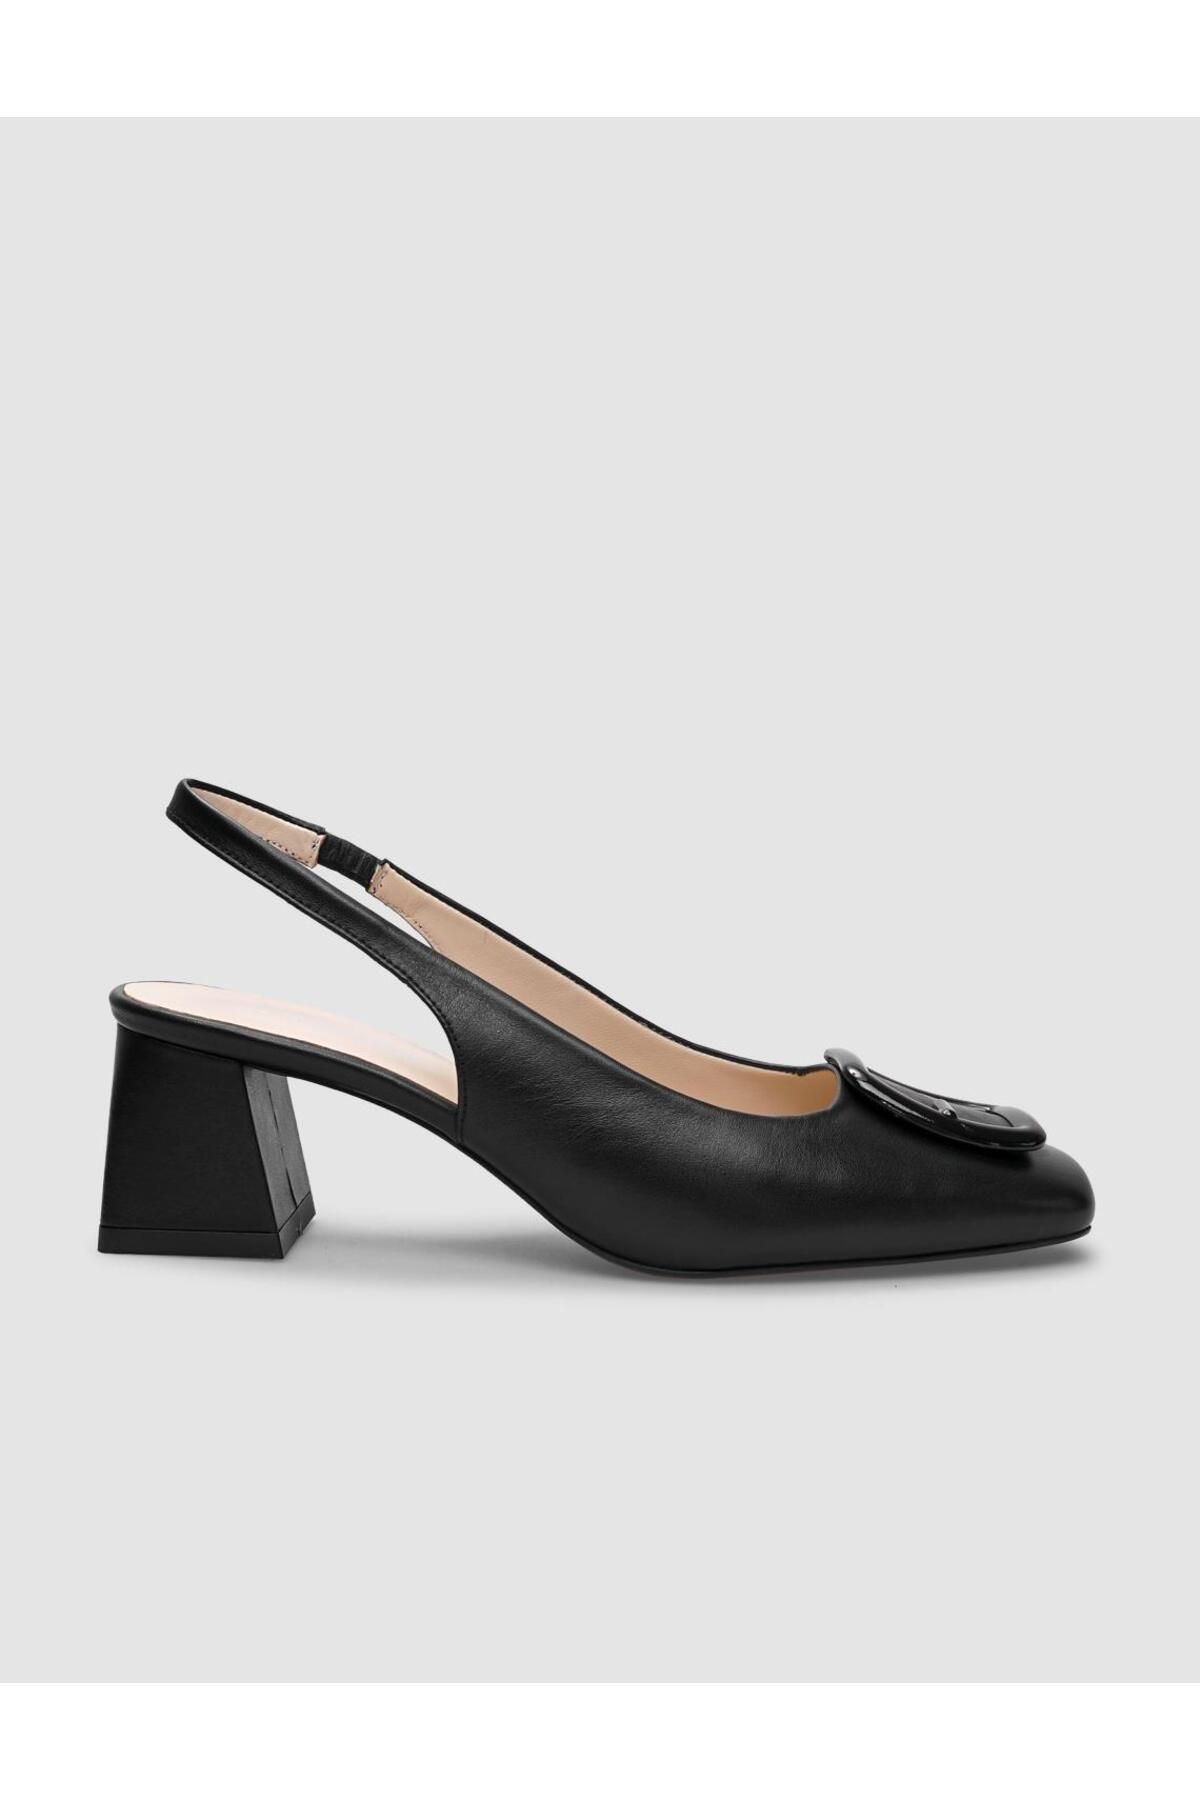 Cabani %100 Hakiki Deri Siyah Toka Detaylı Kadın Topuklu Ayakkabı